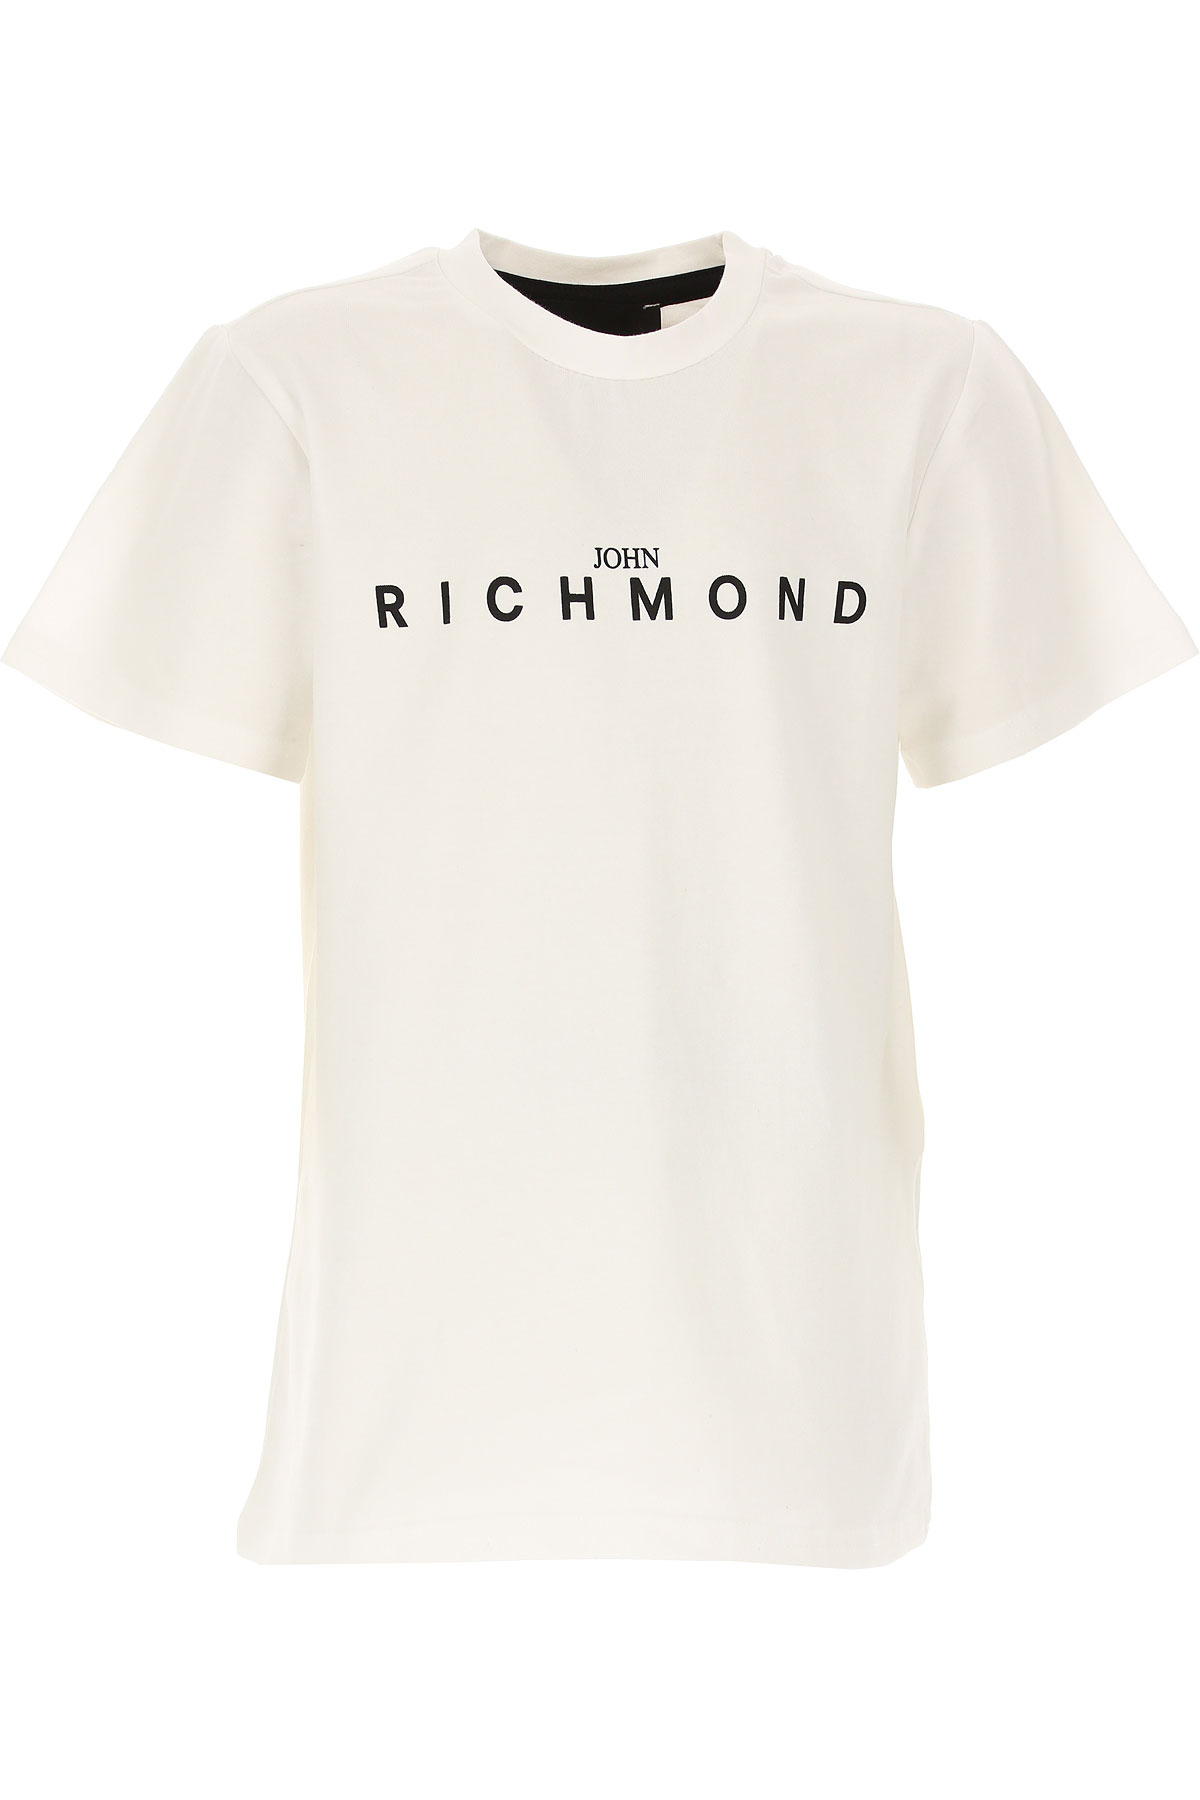 Richmond Kinder T-Shirt für Jungen Günstig im Sale, Weiss, Baumwolle, 2017, 16Y 6Y